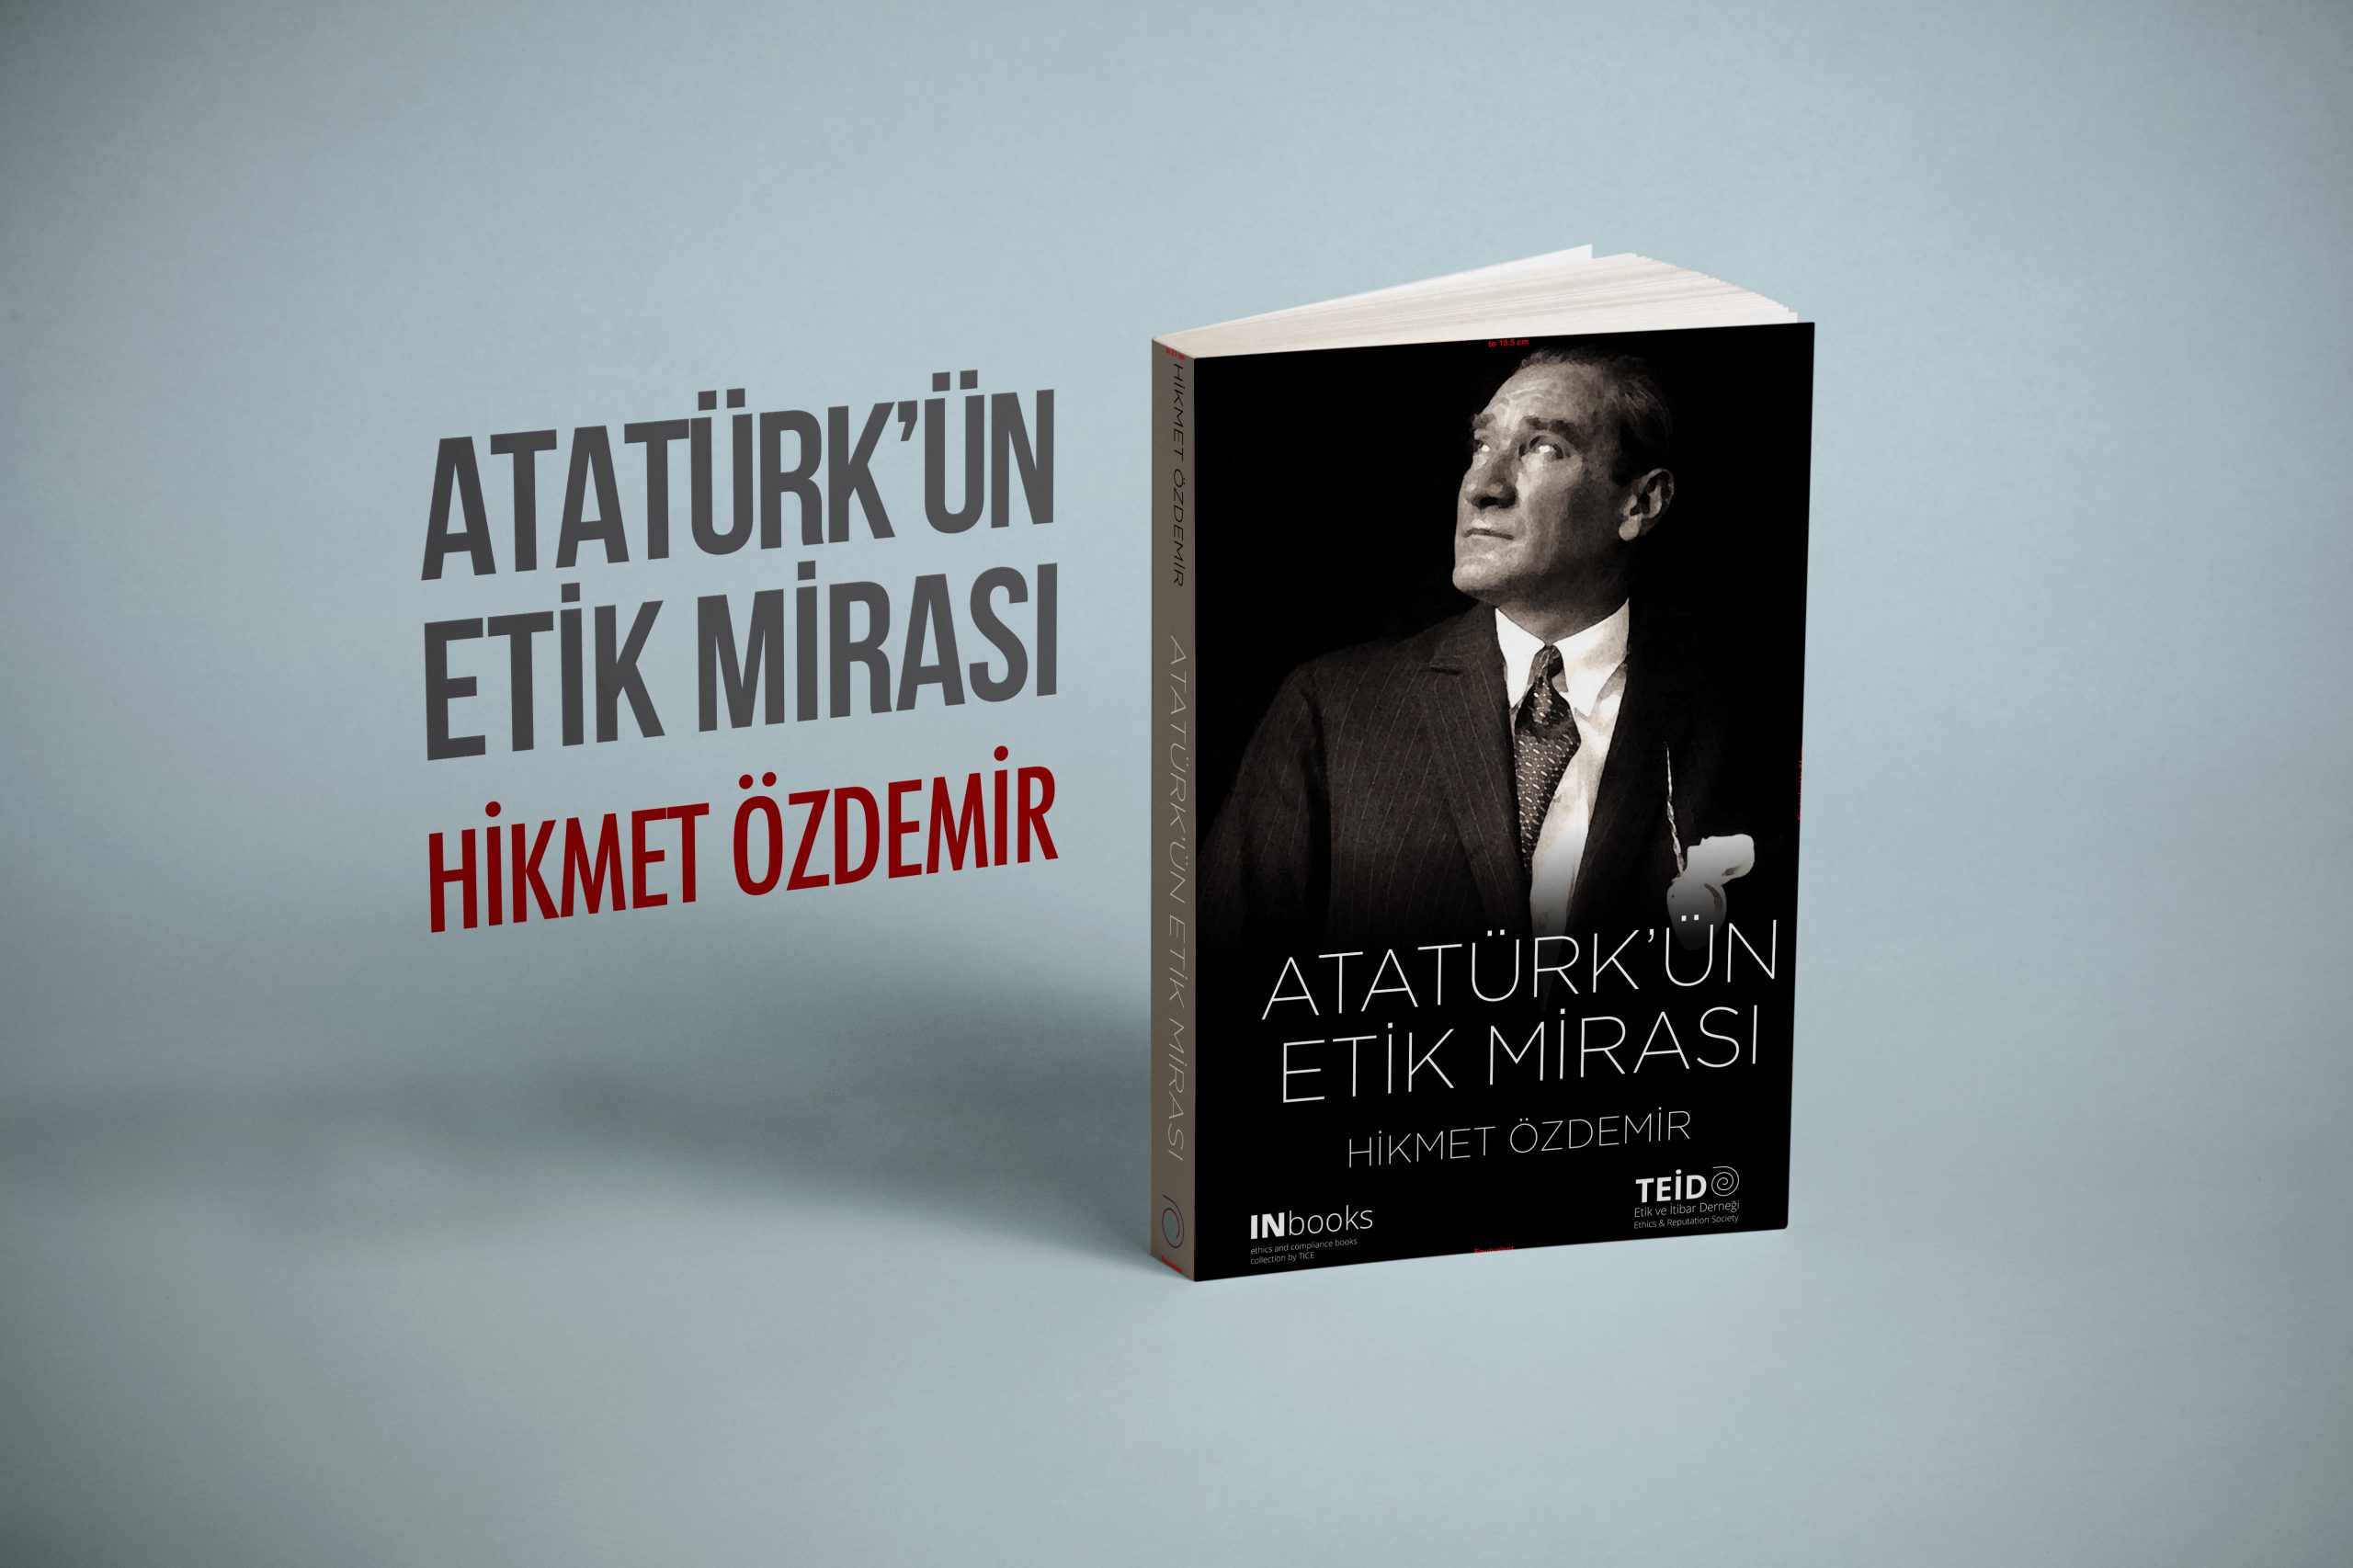 “Atatürk’ün Etik Mirası”